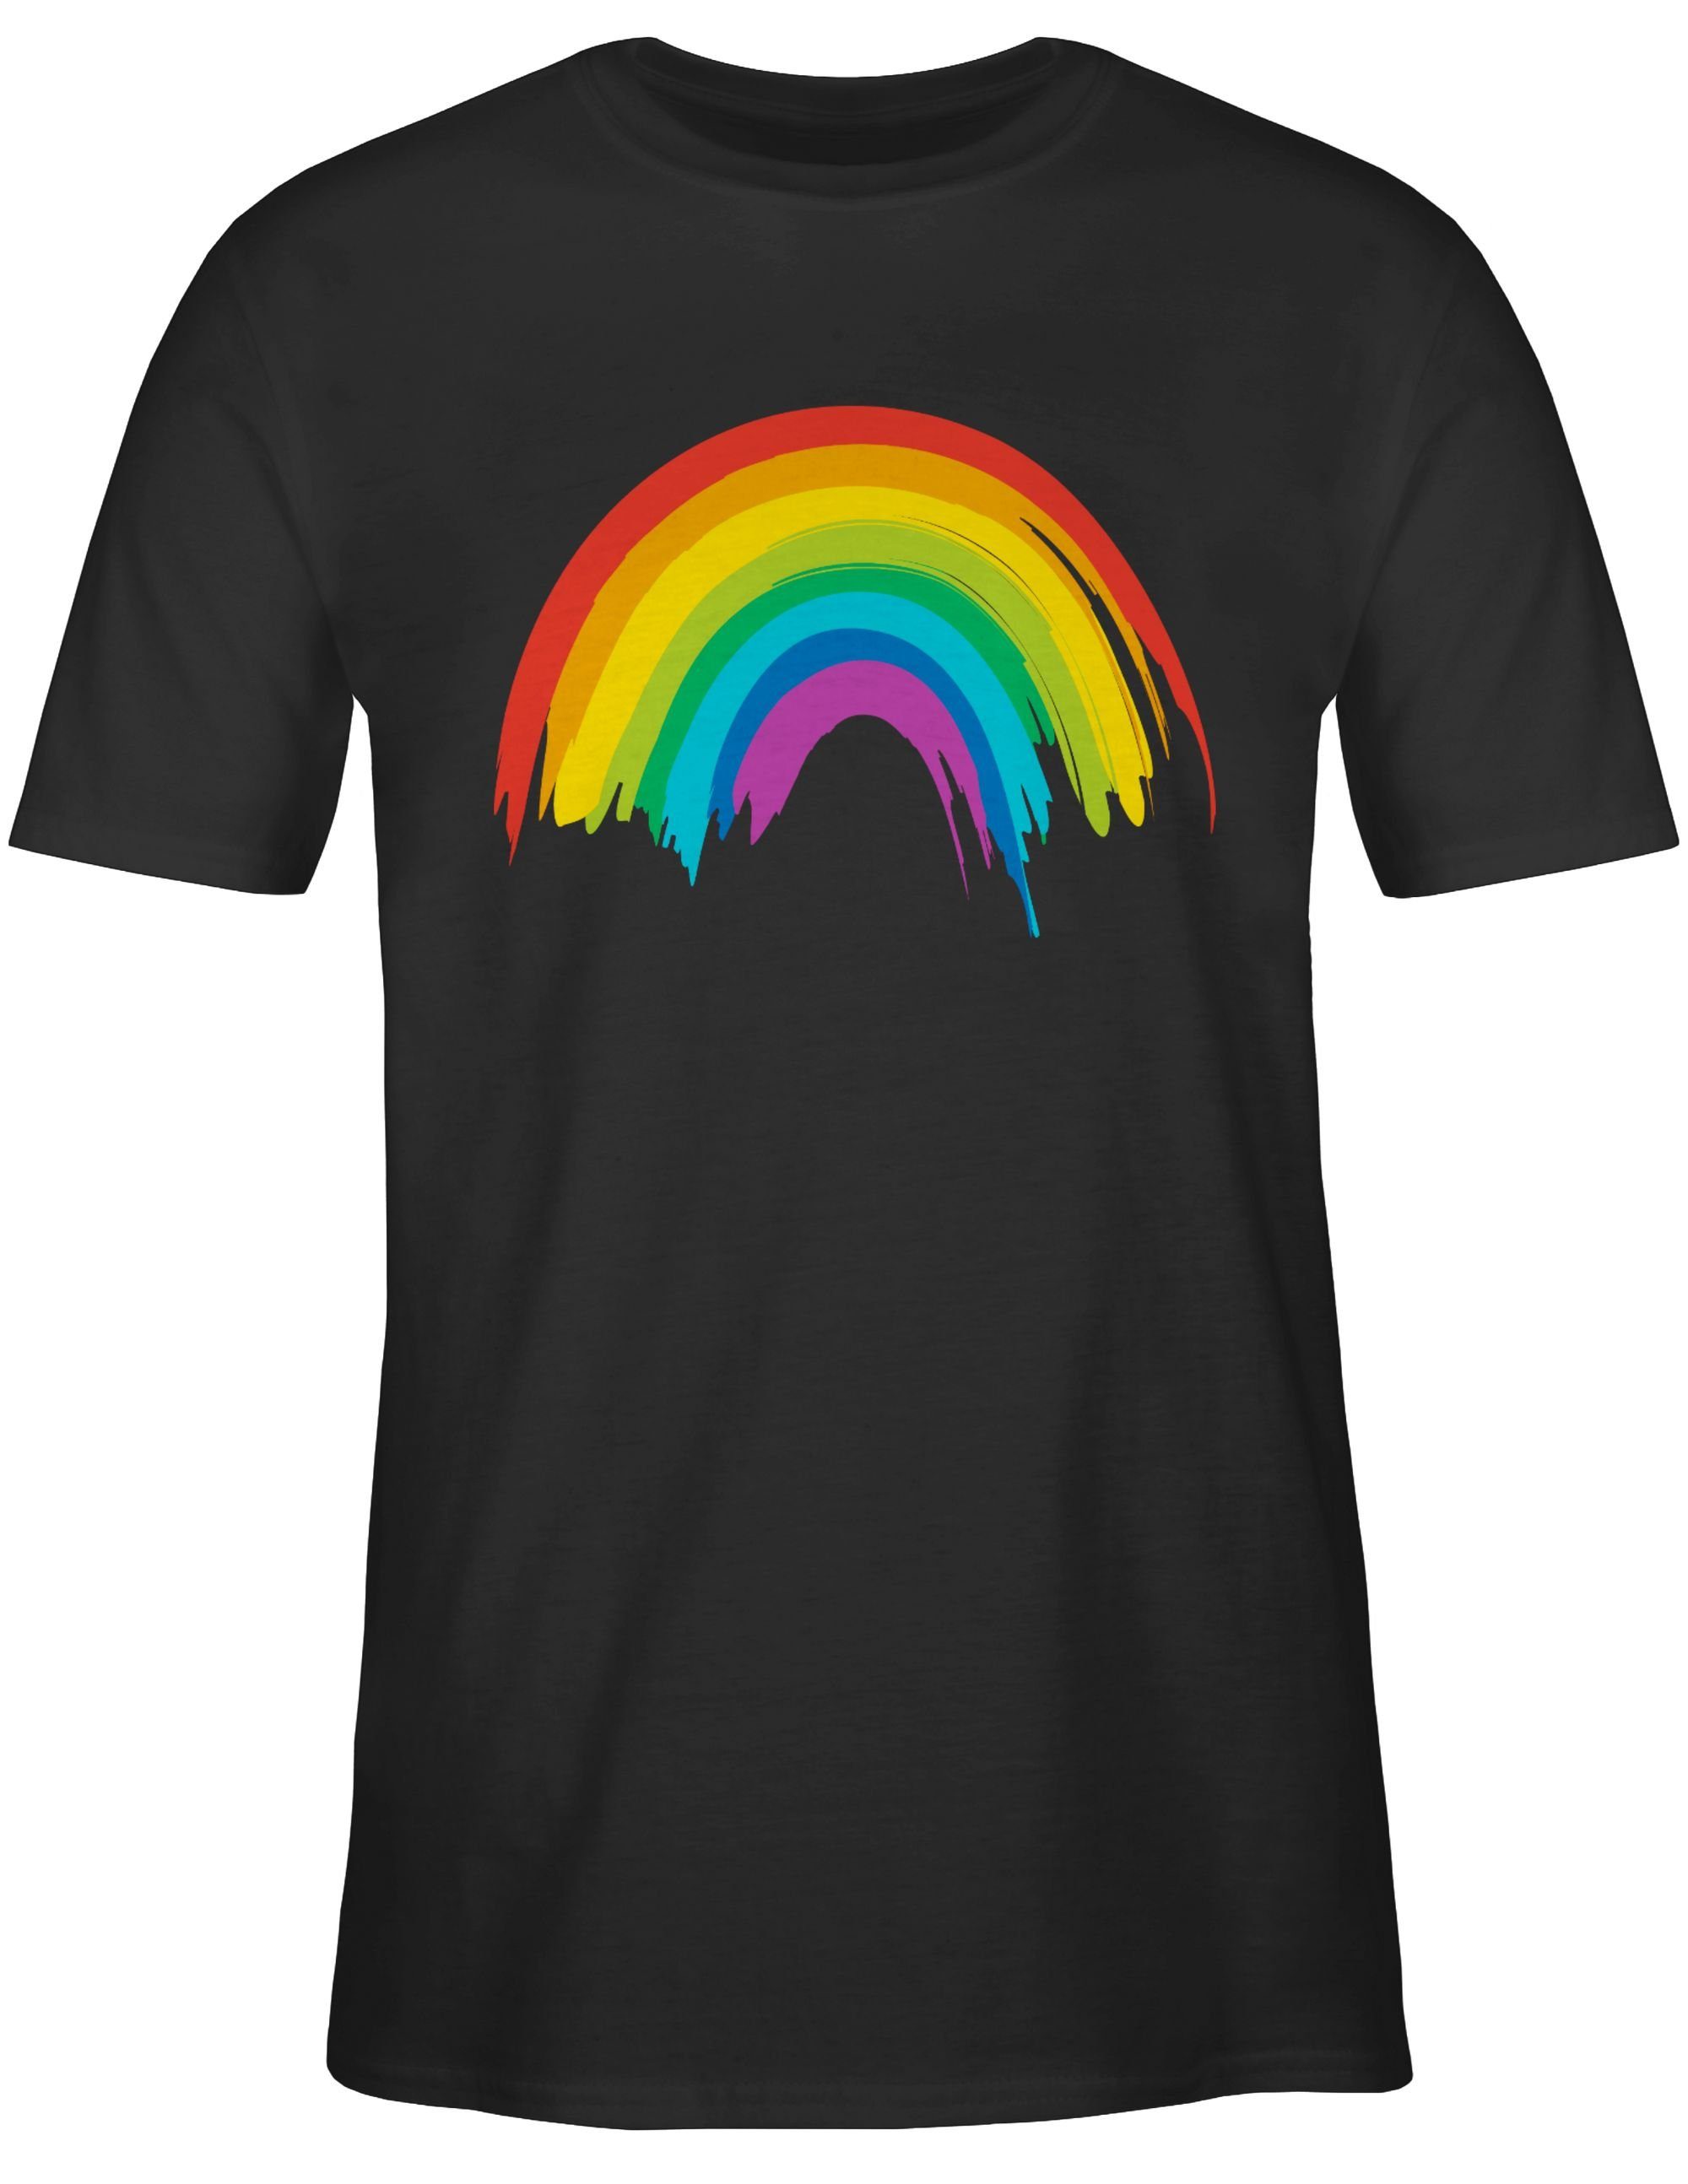 Kleidung Schwarz T-Shirt LGBTQ LGBT 1 & Shirtracer Regenbogen LGBT